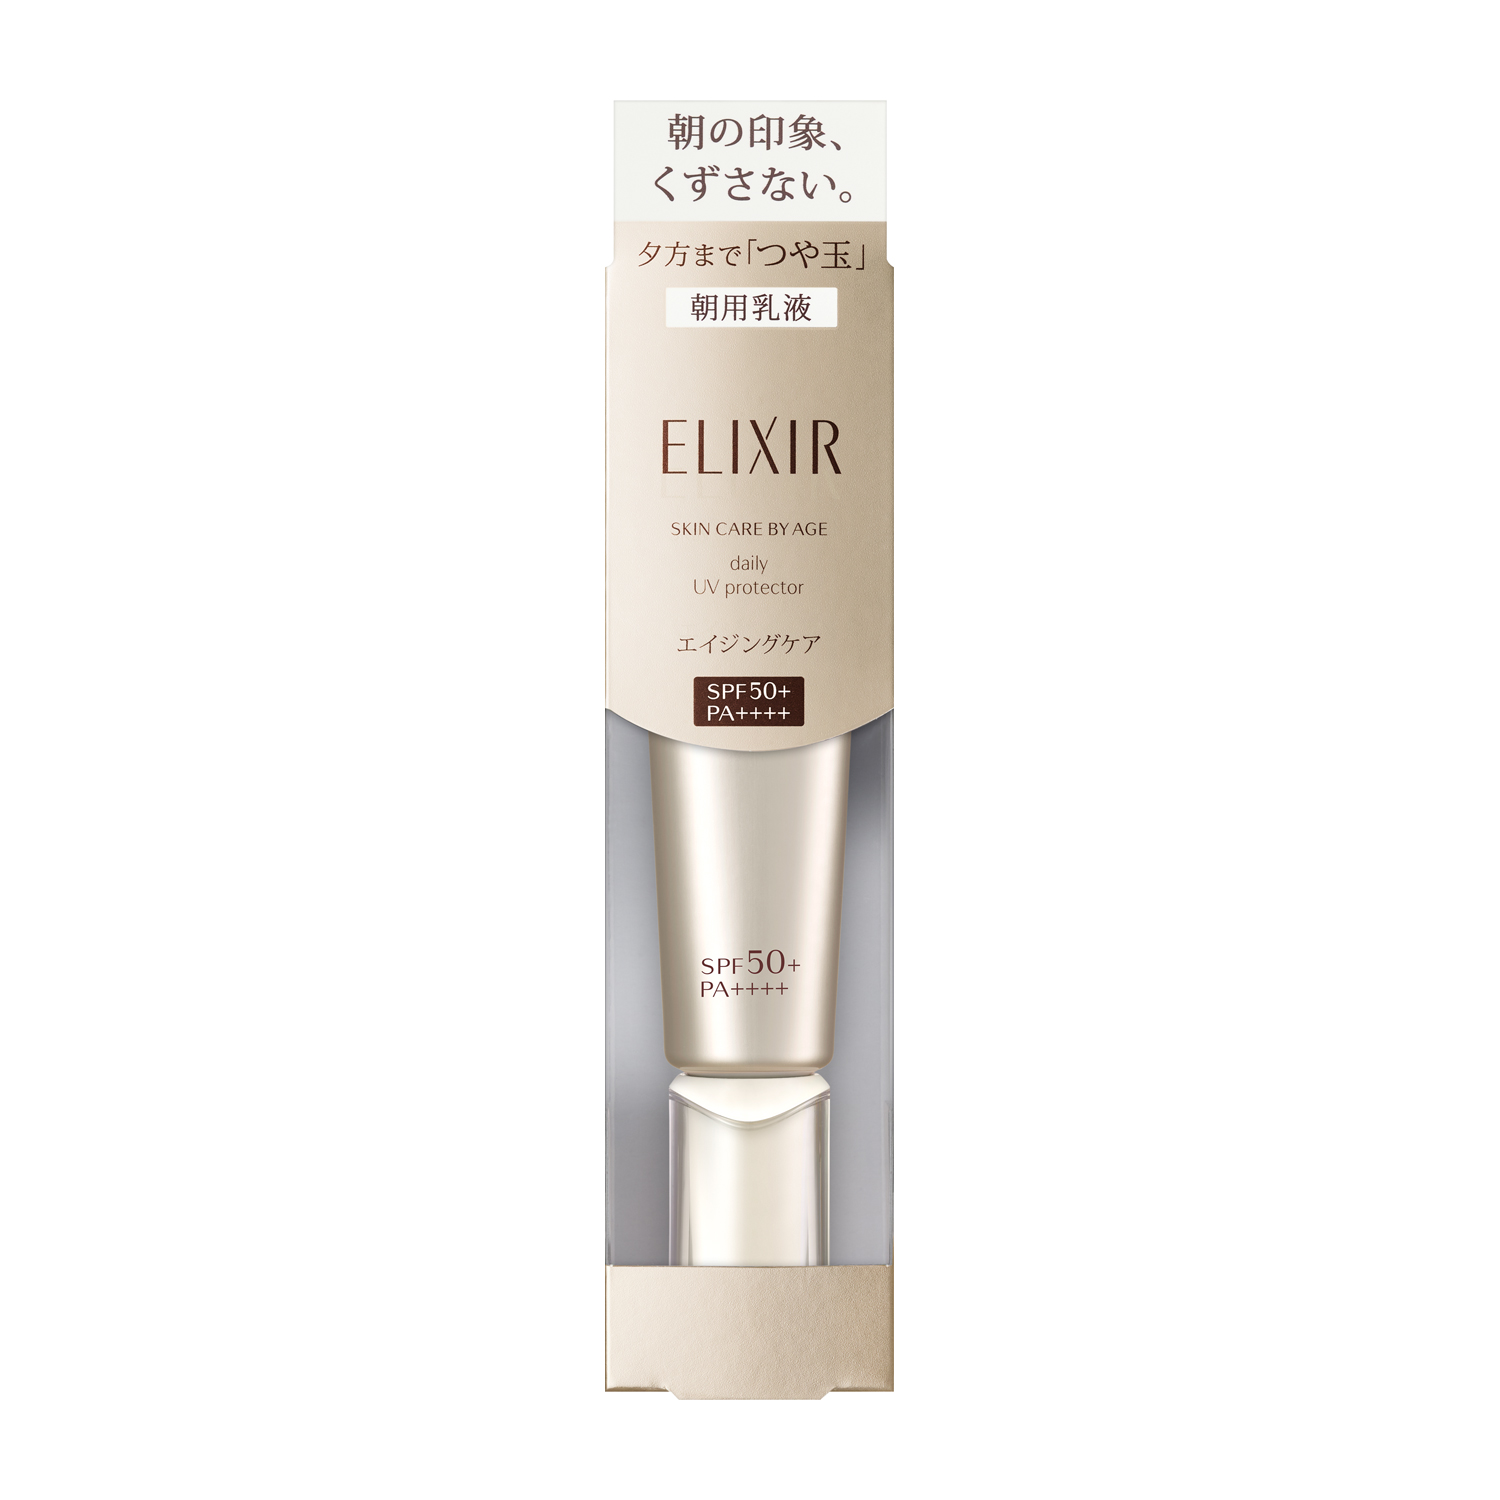 Kem chống nắng và dưỡng da ban ngày Shiseido ELIXIR Brightening (35ml) SPF50+PA++++ - Nhật Bản